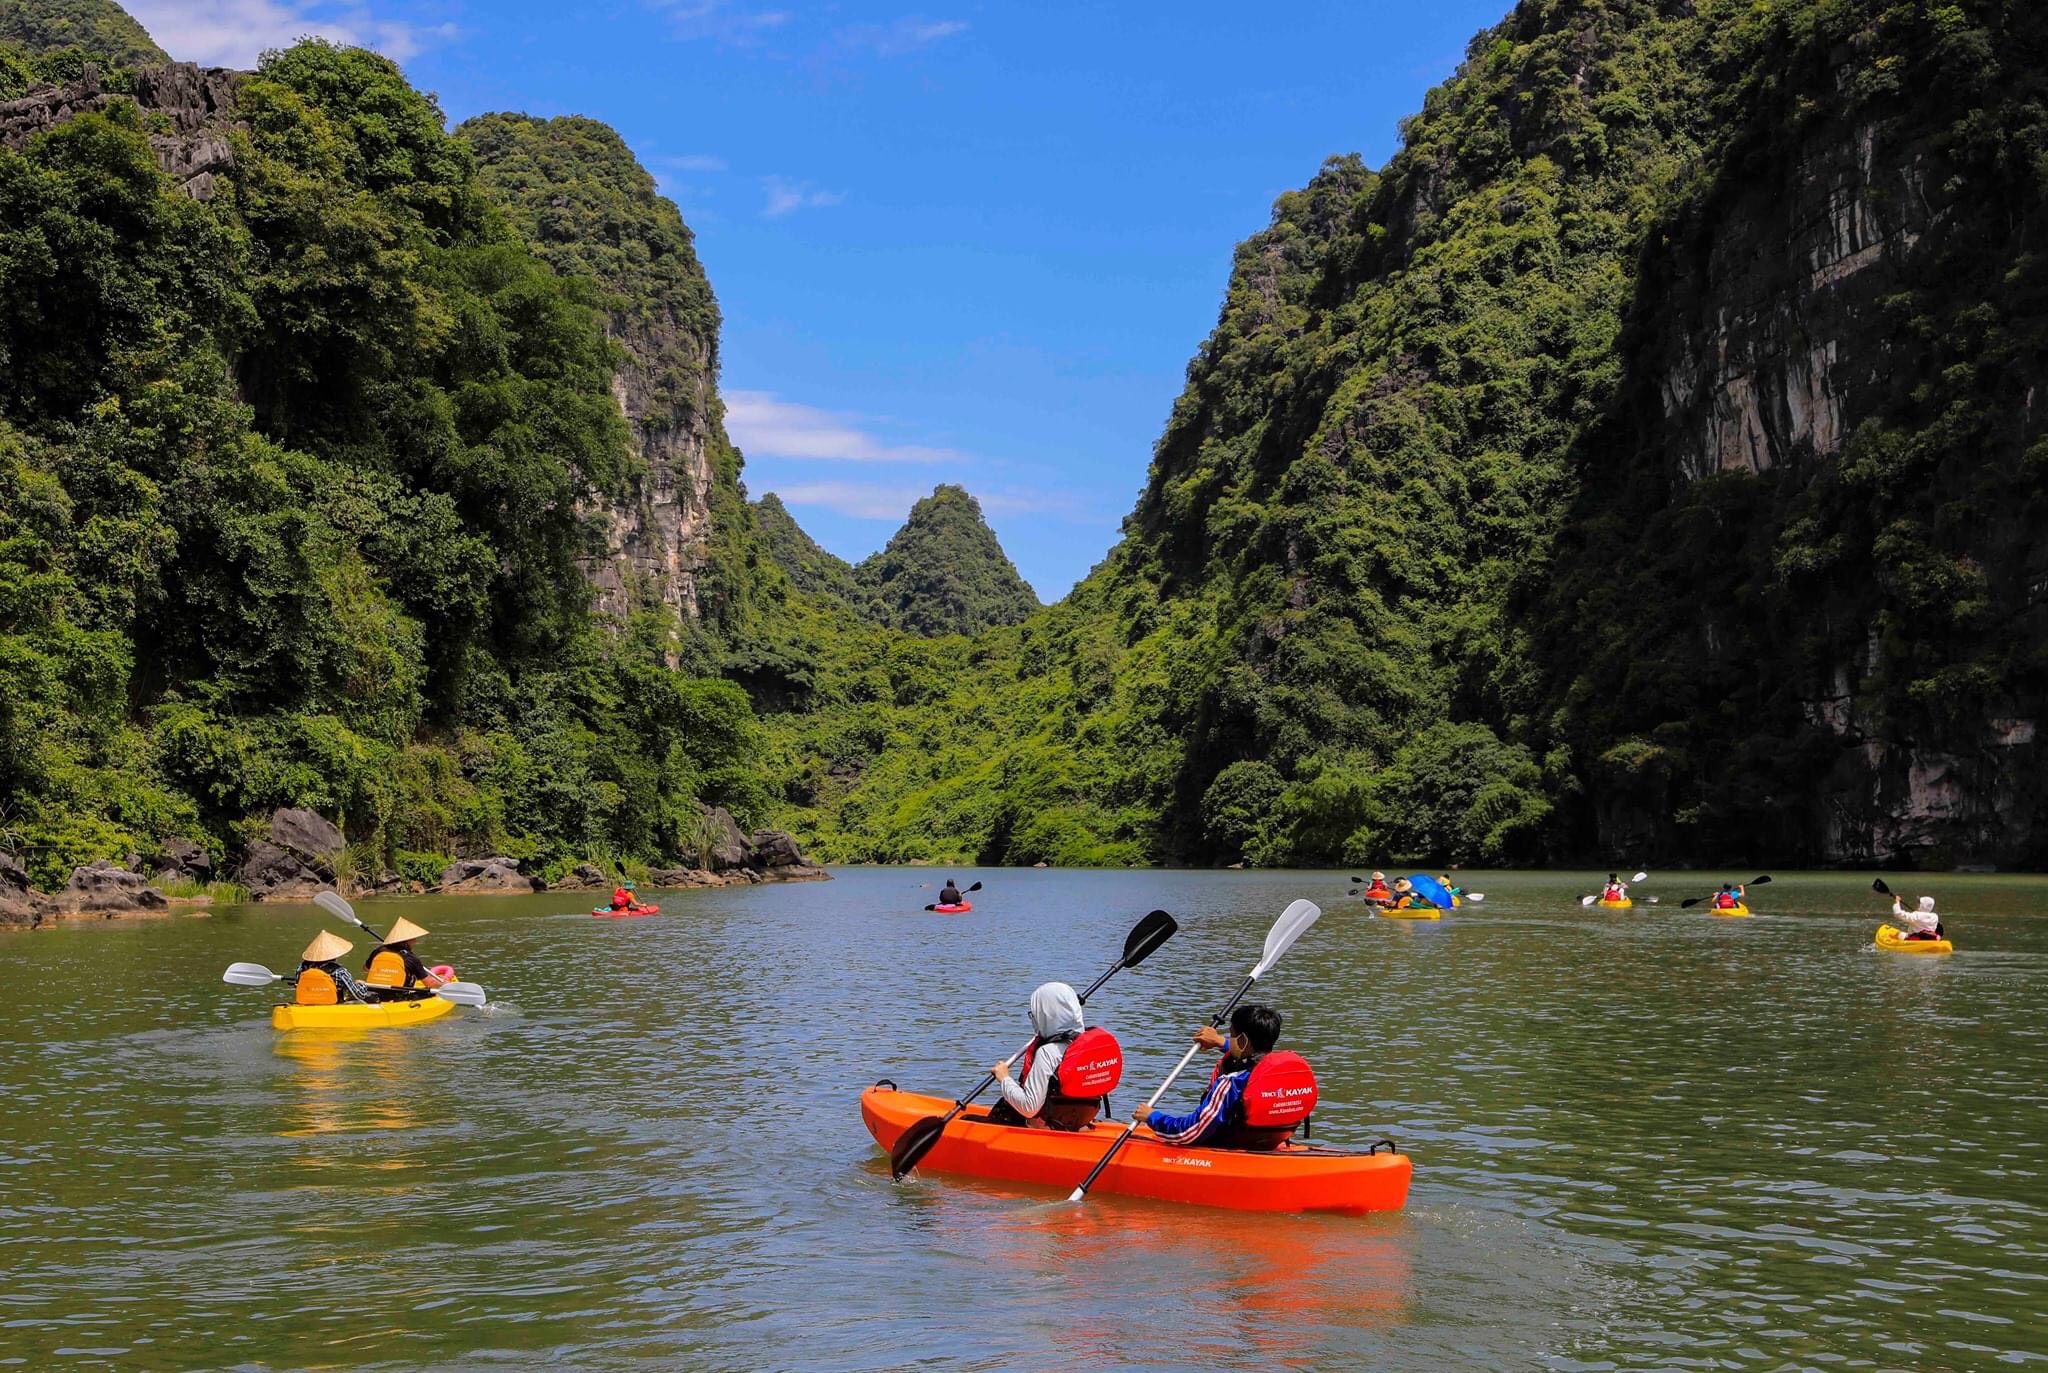 Đến Tràng An, du khách có cơ hội trải nghiệm chèo thuyền và ngắm nhìn phong cảnh thơ mộng hữu tình ở nơi đây